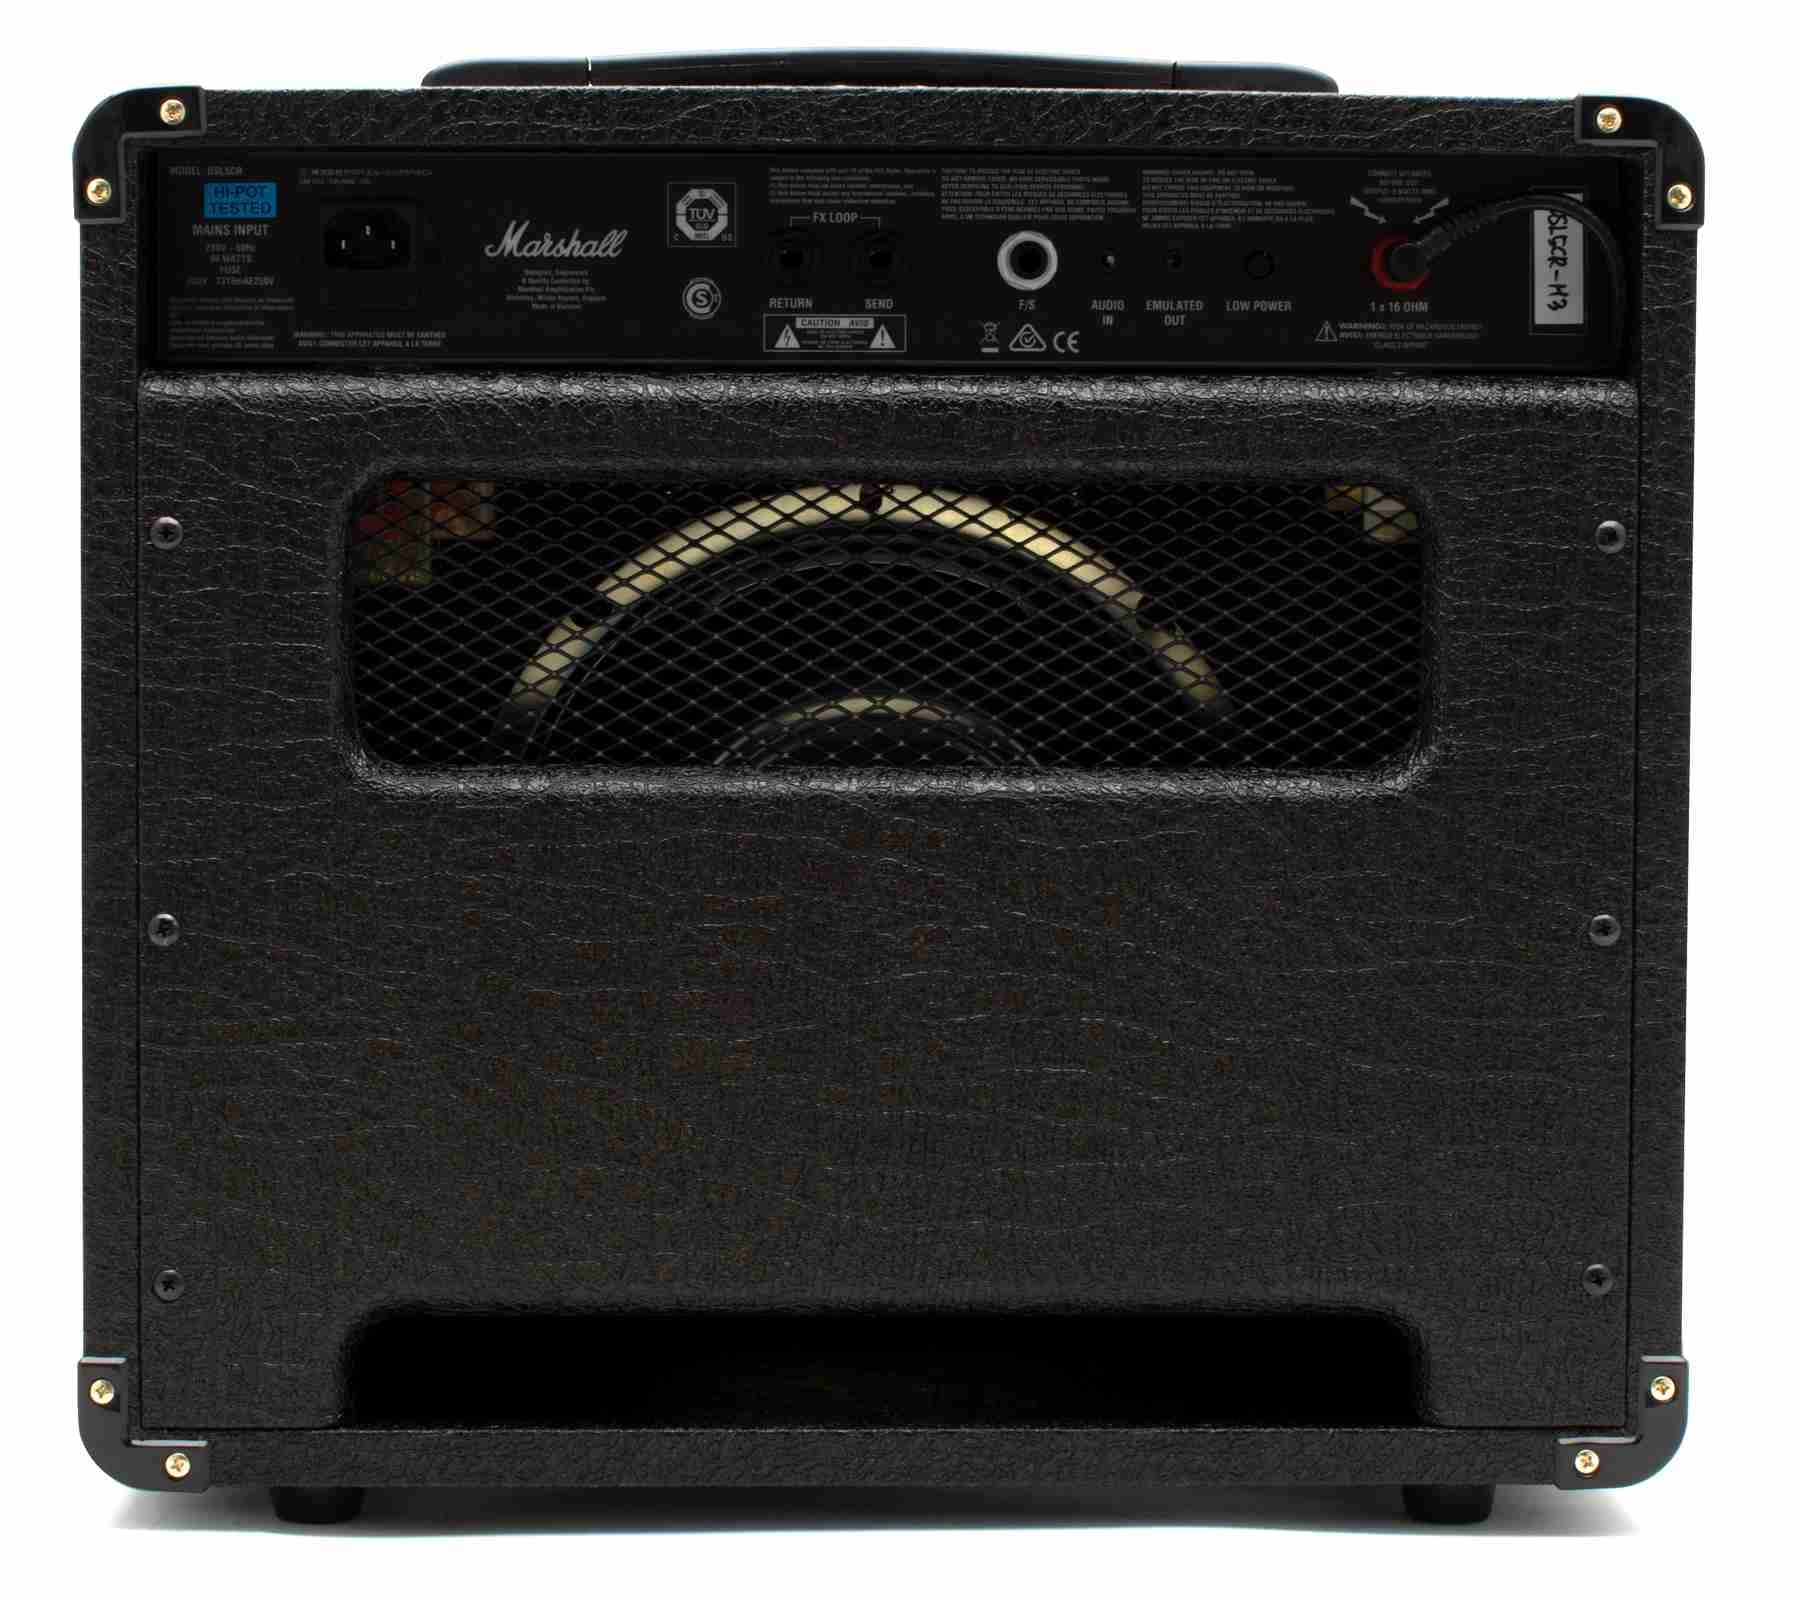 Marshall DSL5CR 5 Watt Guitar Amplifier COMBO